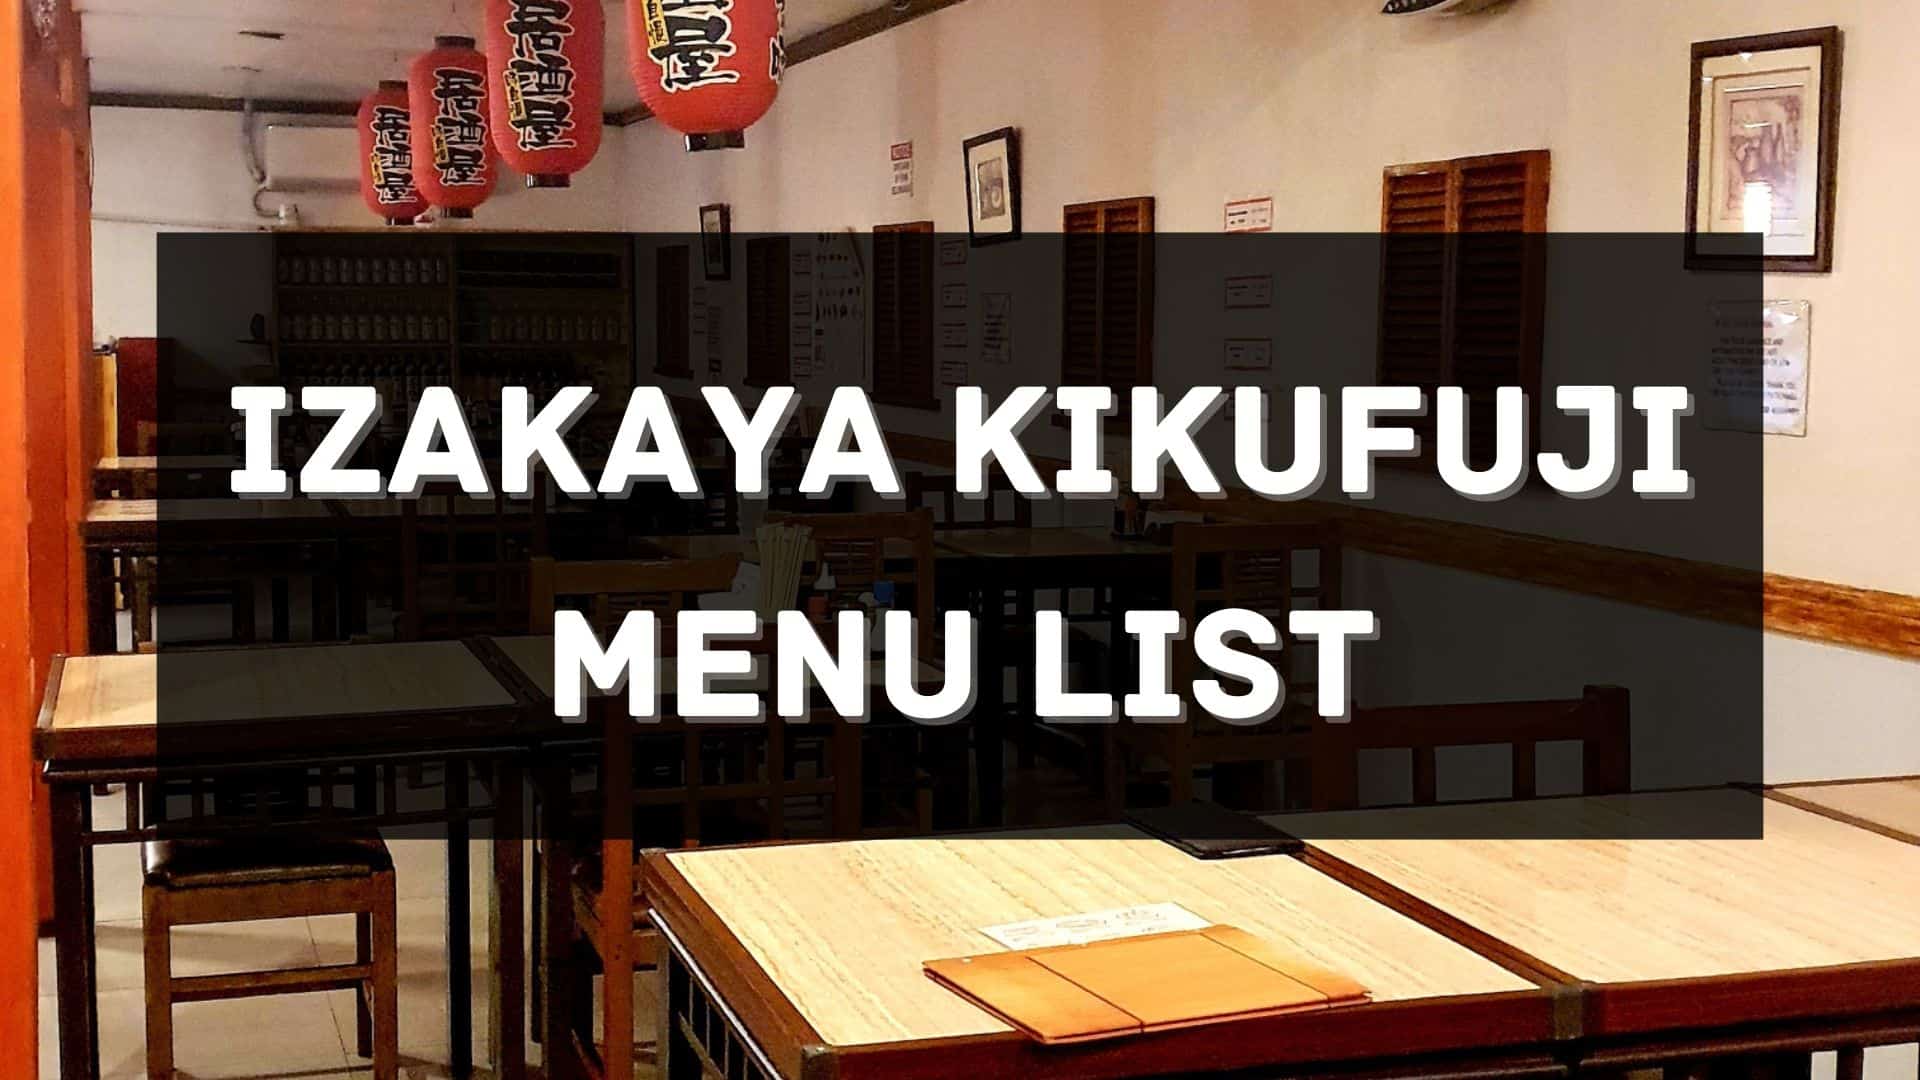 izakaya kikufuji menu prices philippines